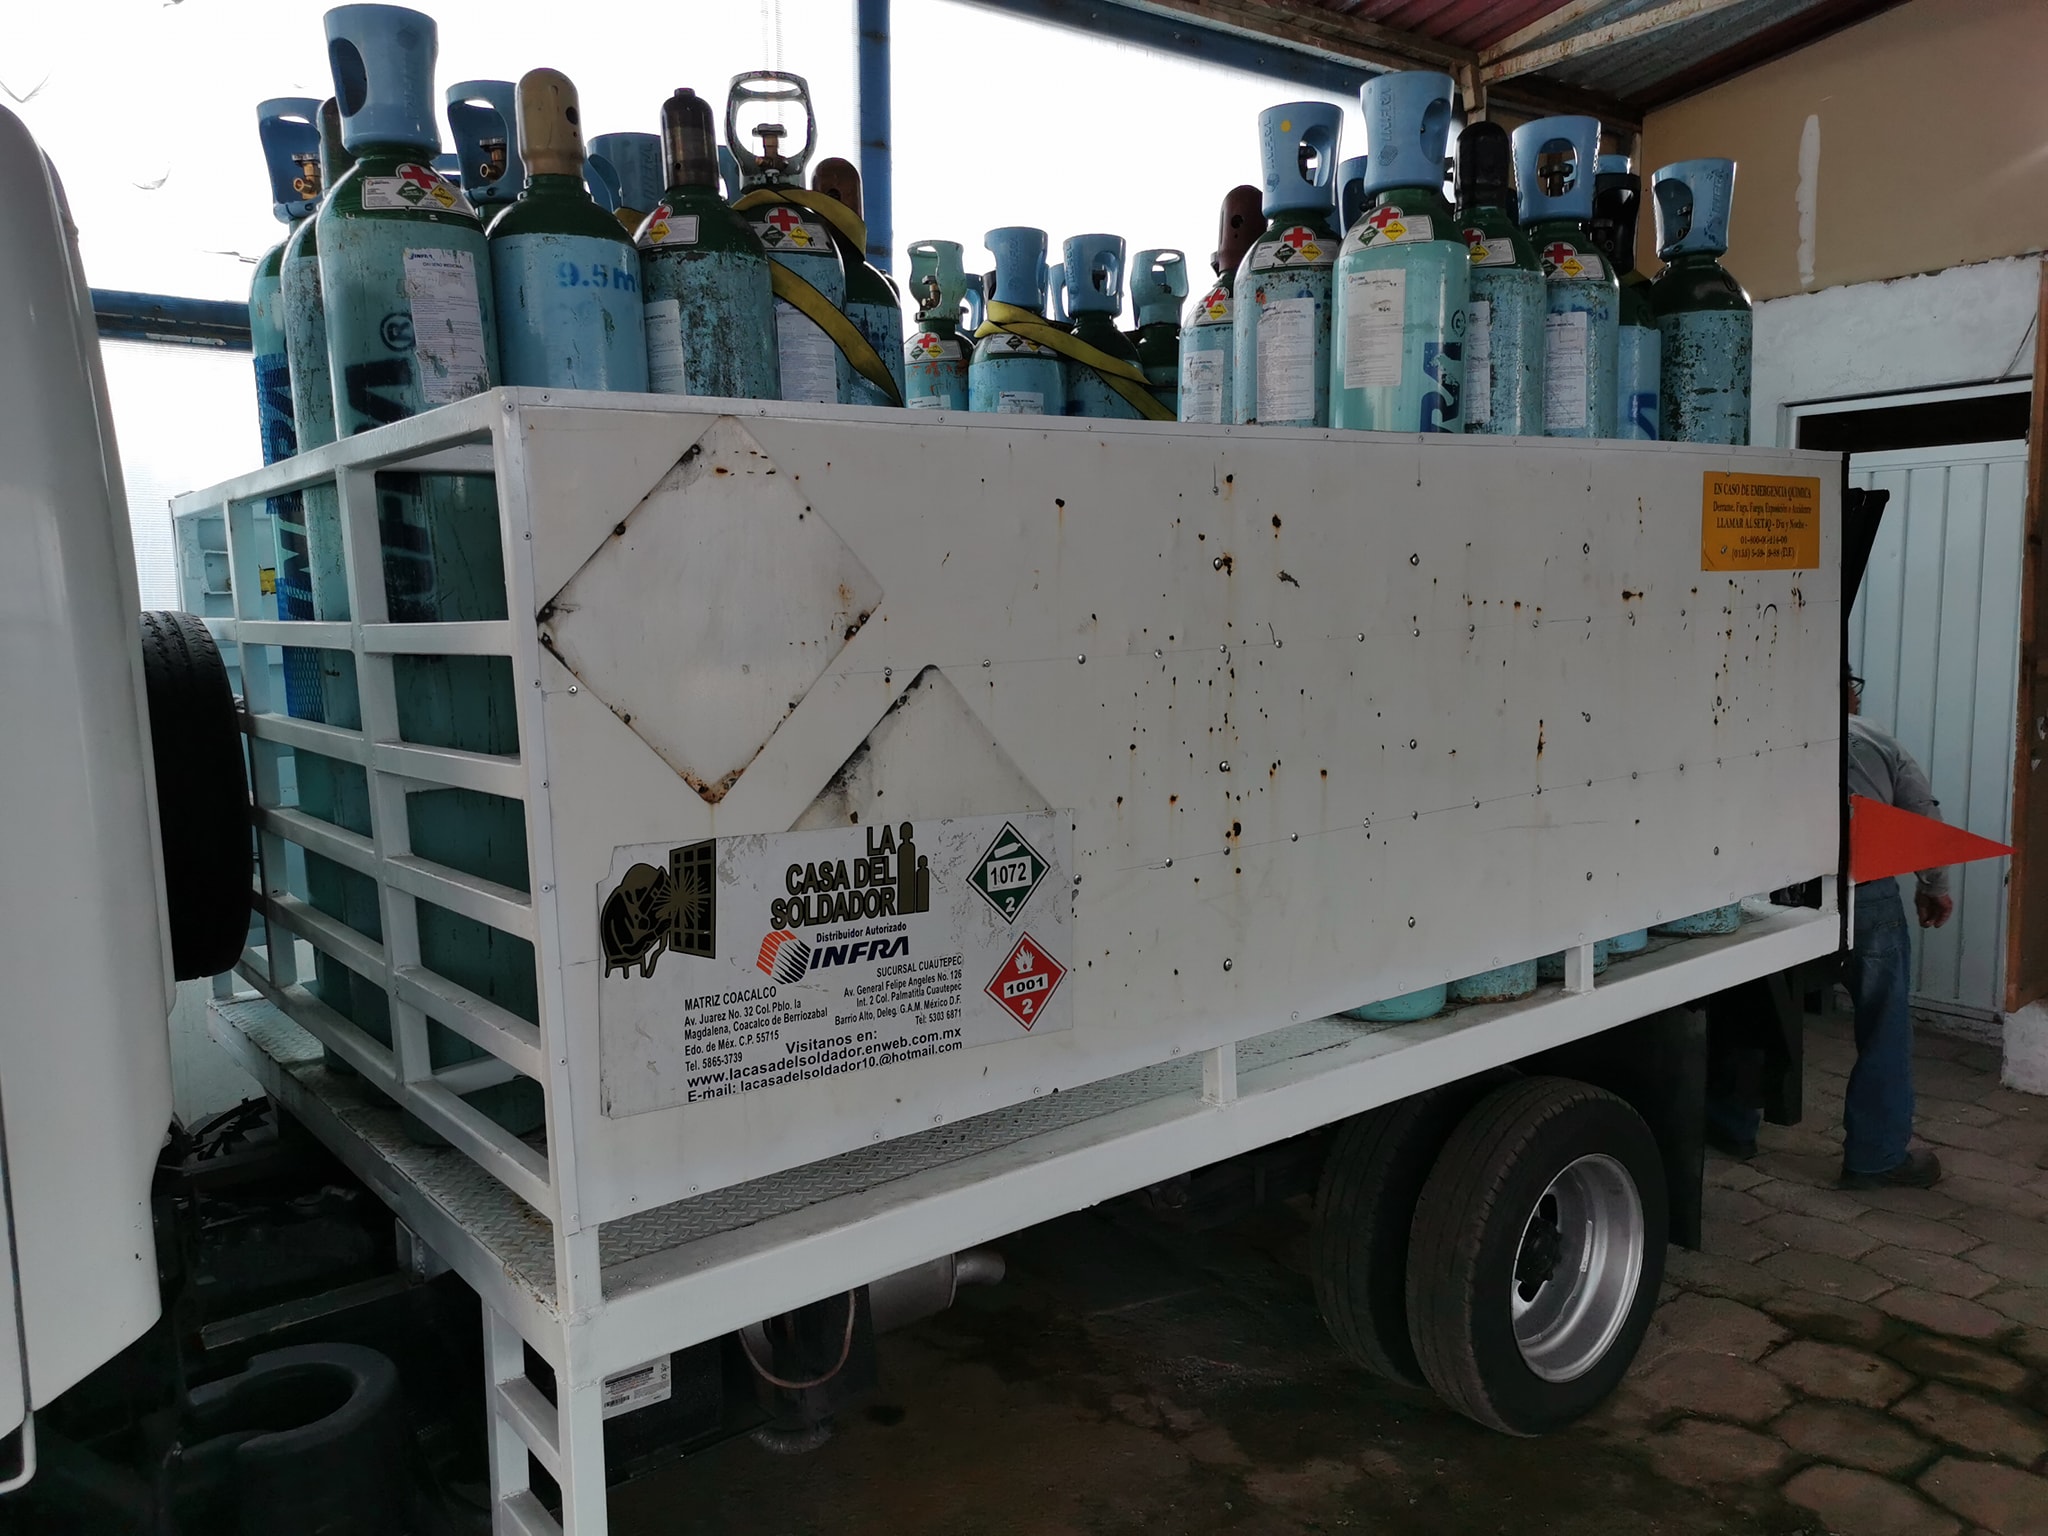 Camión con oxigeno medicinal es robado en el Edomex